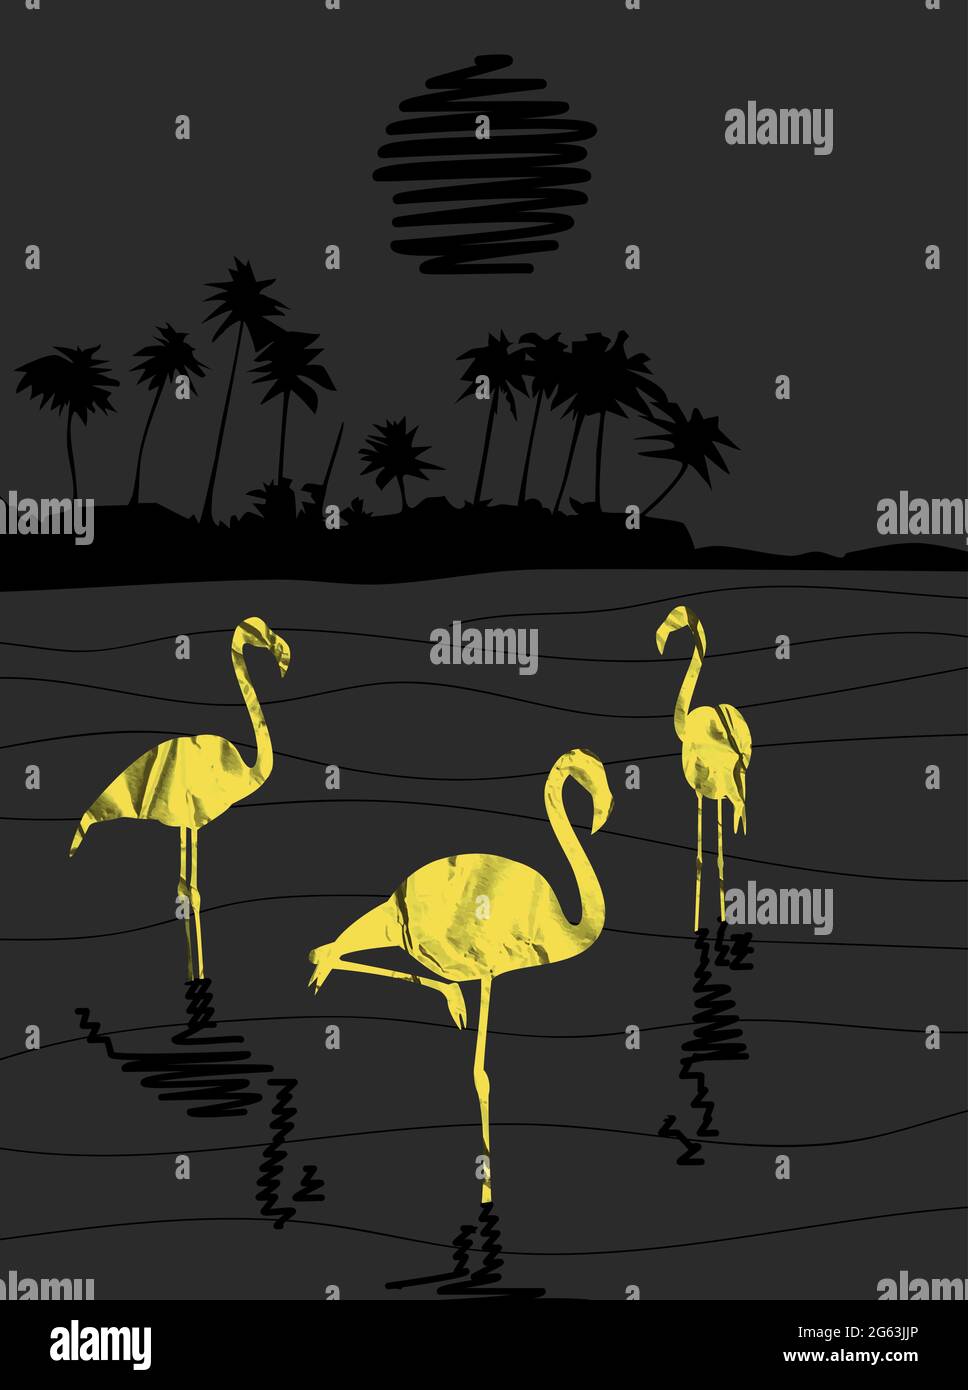 flamingo Vögel Gold Papier Silhouetten stehen im Wasser in der Nacht abstrakte Landschaft mit schwarzem Mond und Palmen Meer Vektor-Illustration Stock Vektor